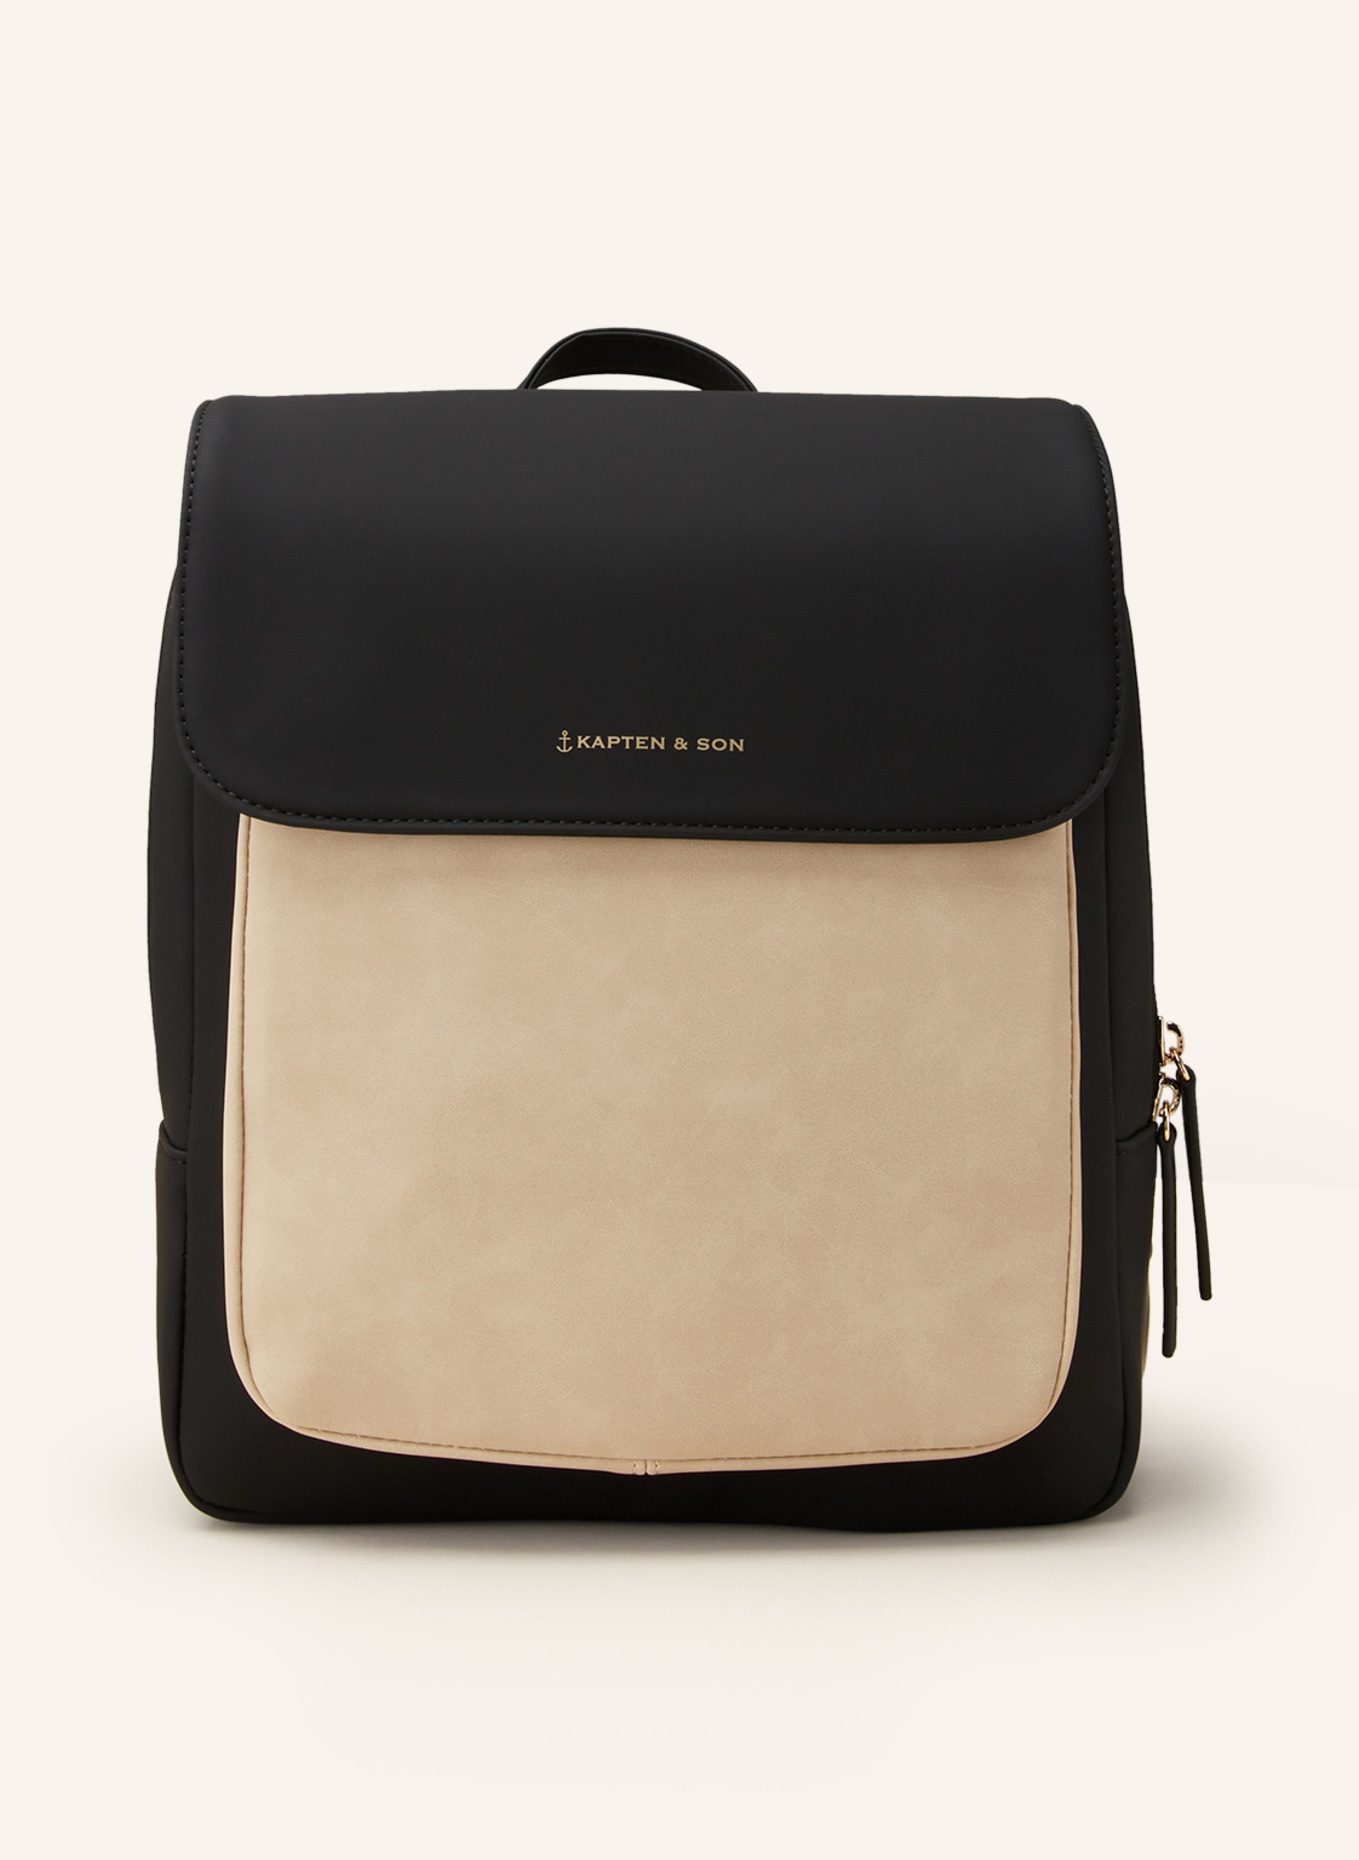 KAPTEN & SON Backpack TROMSO SMALL 9 l, Color: BLACK/ CREAM (Image 1)